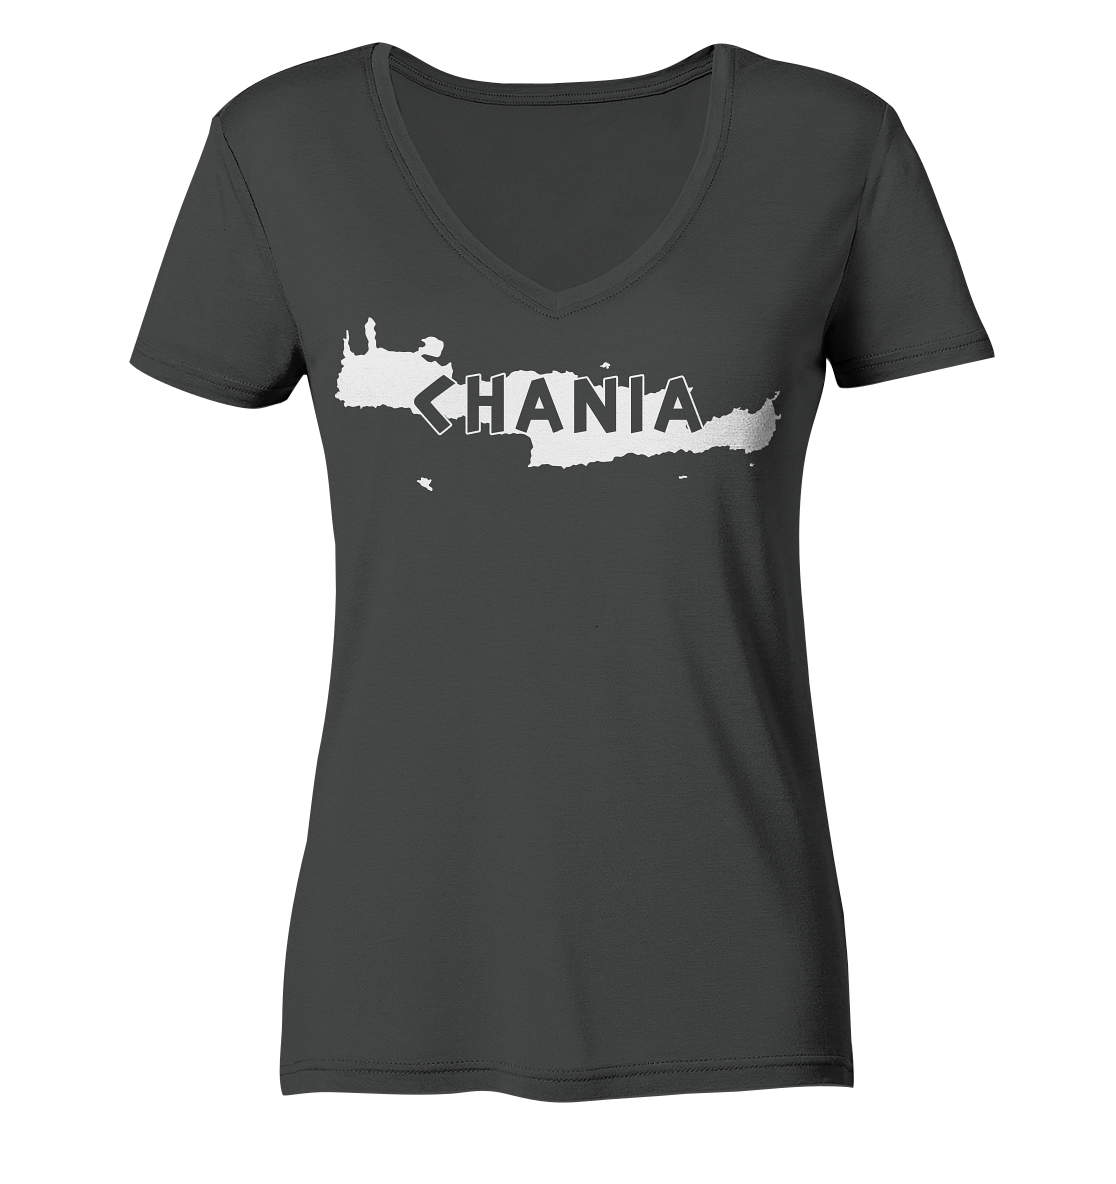 Chania Crete Silhouette - Ladies Organic V-Neck Shirt